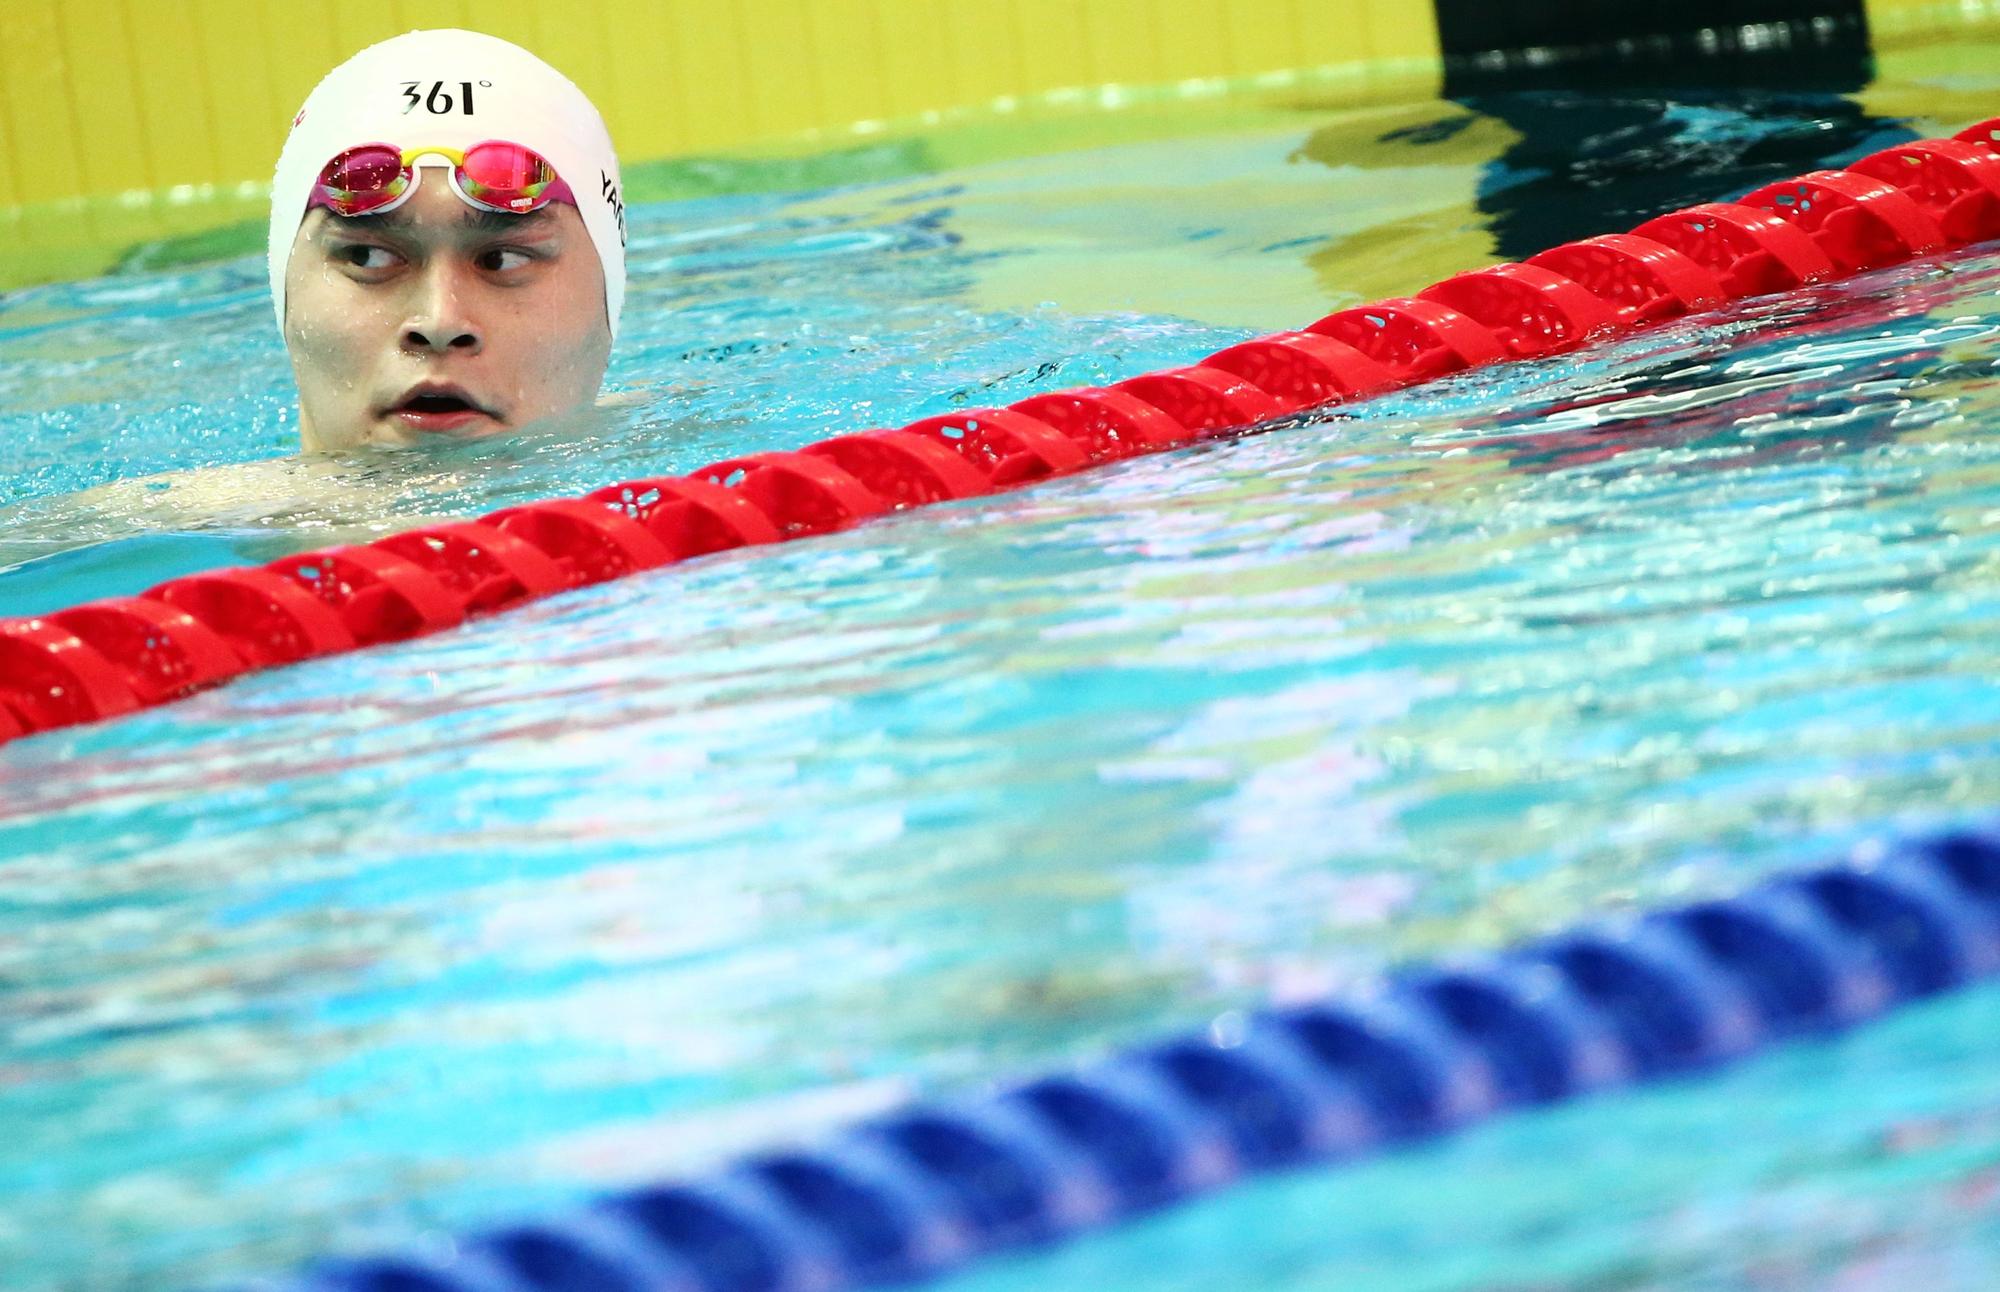 Le nageur chinois Sun Yang (ici en 2019) avait été contrôlé positif à la  trimétazidine en 2014 et suspendu trois mois. [REUTERS - ANTONIO BRONIC]